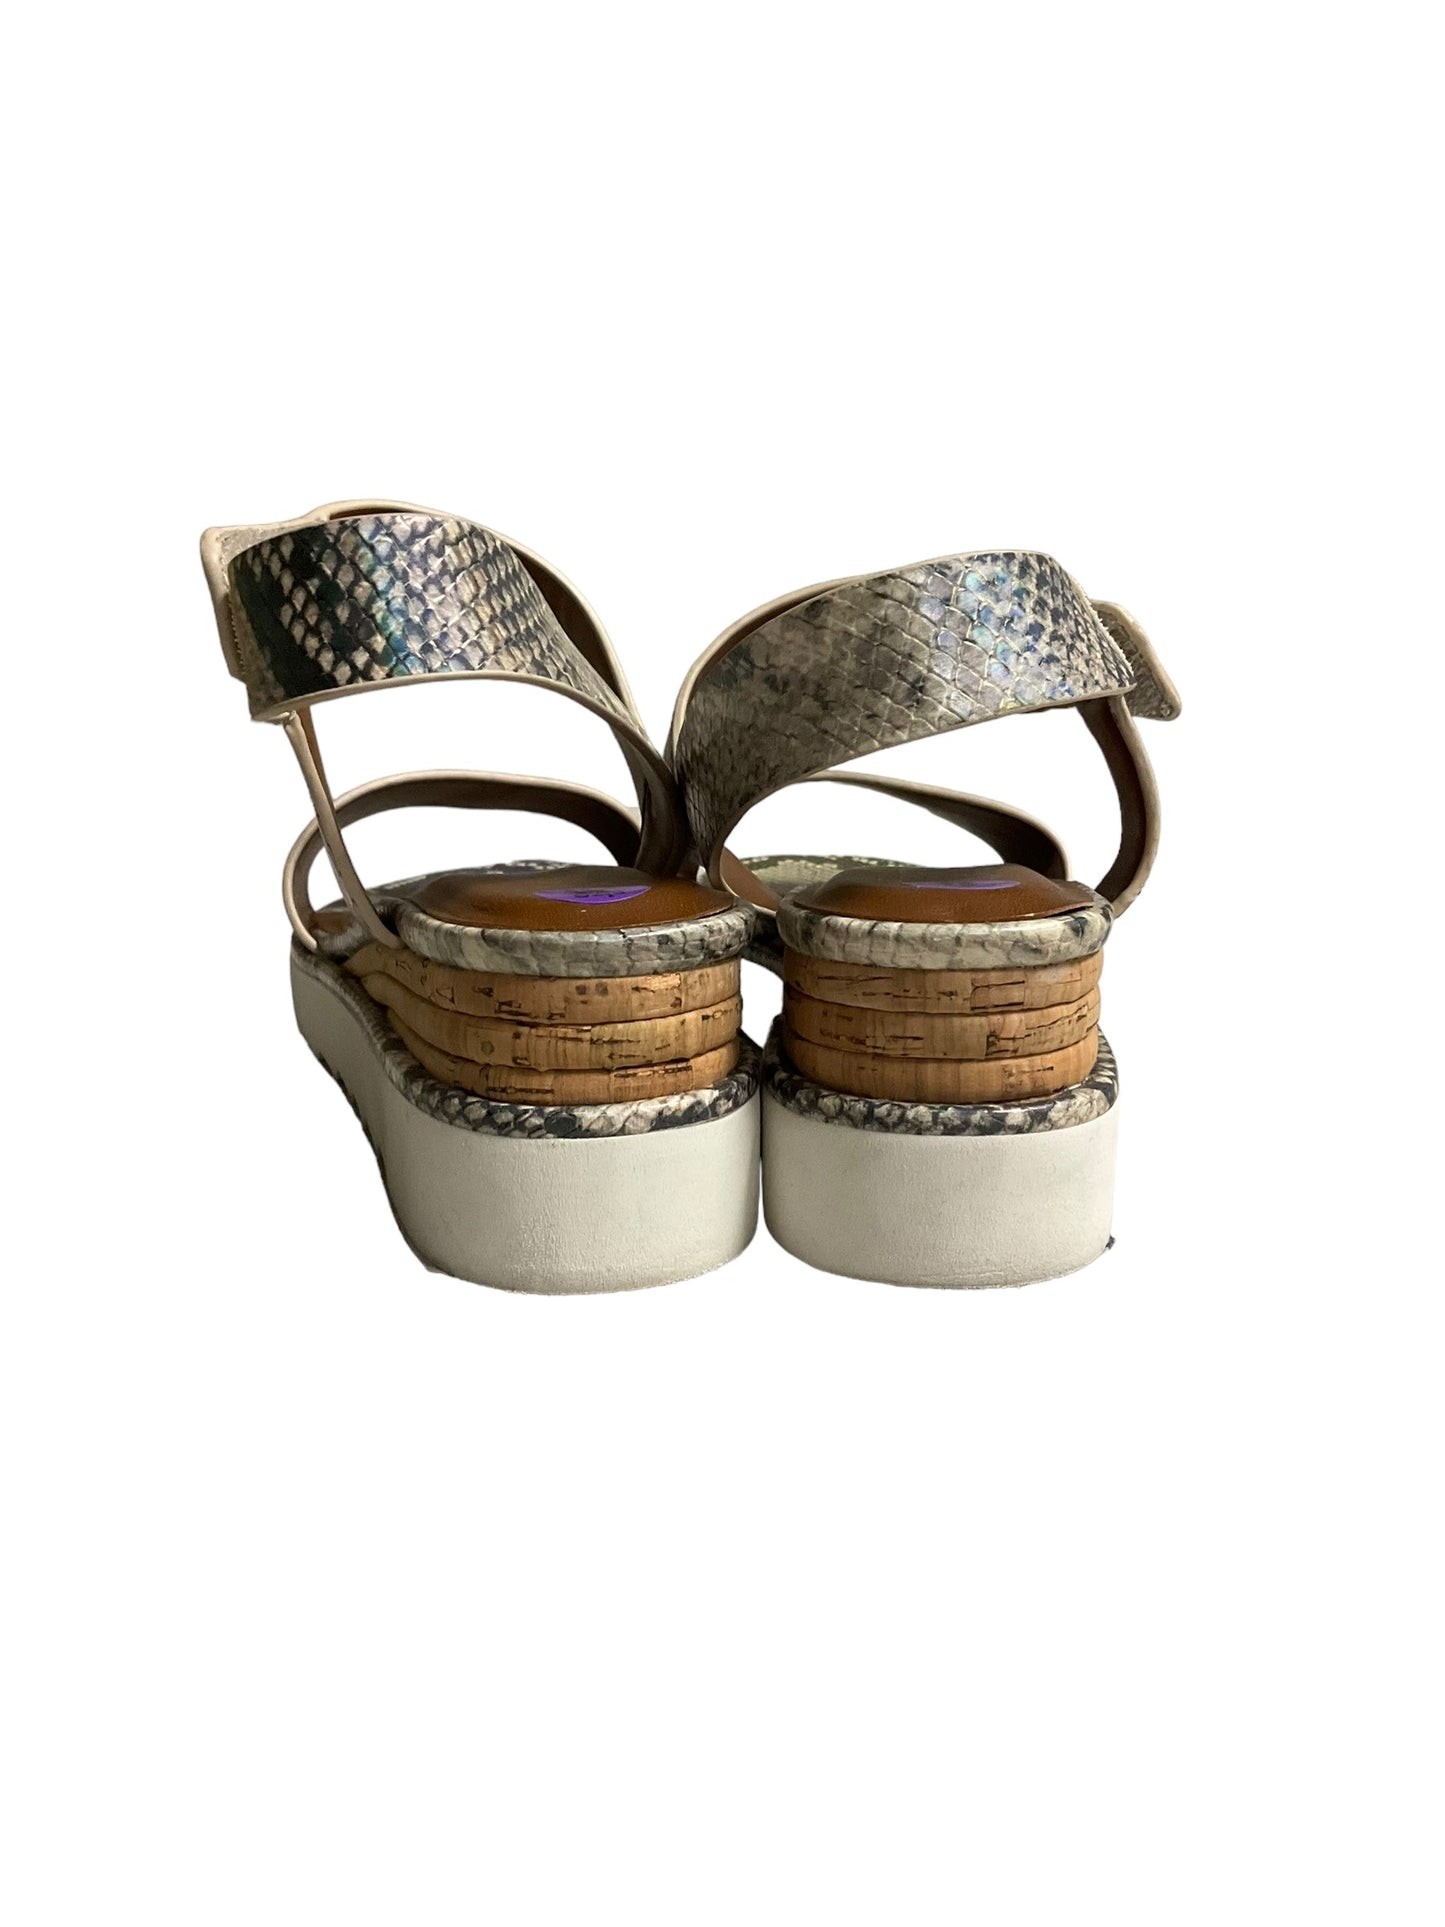 Snakeskin Print Sandals Heels Platform Franco Sarto, Size 8